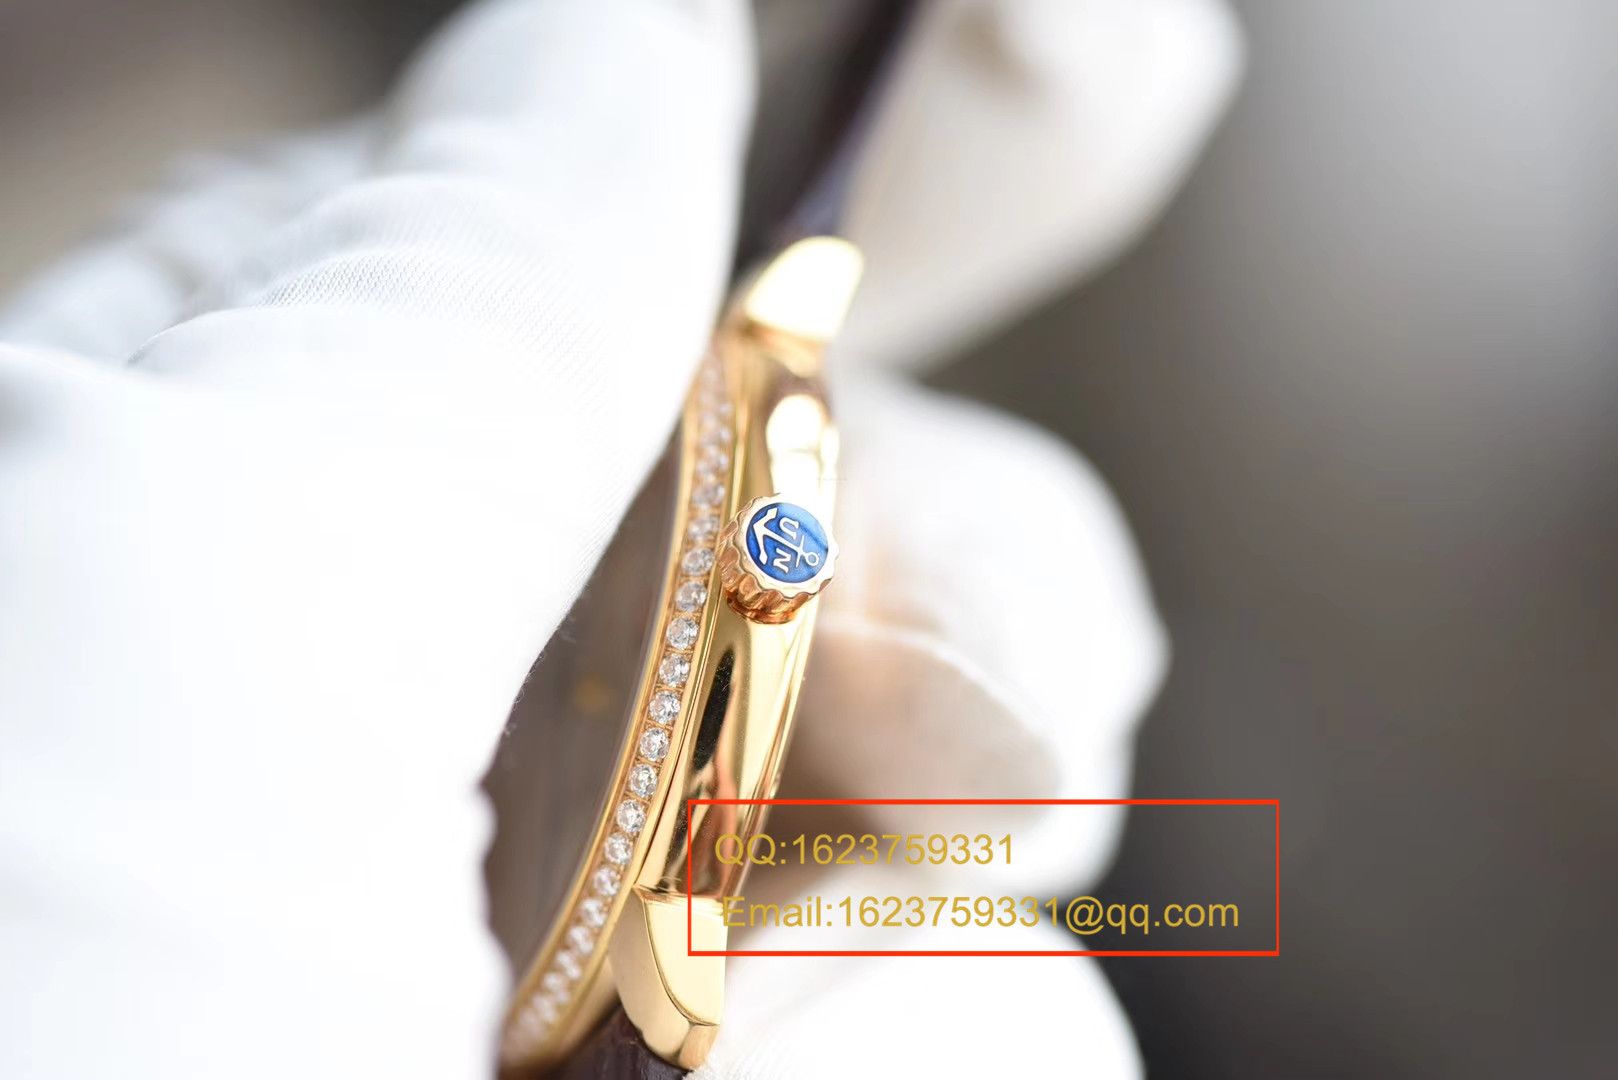 【FK一比一超A高仿手表】雅典鎏金系列8156-111-2/92 表圈镶钻腕表 